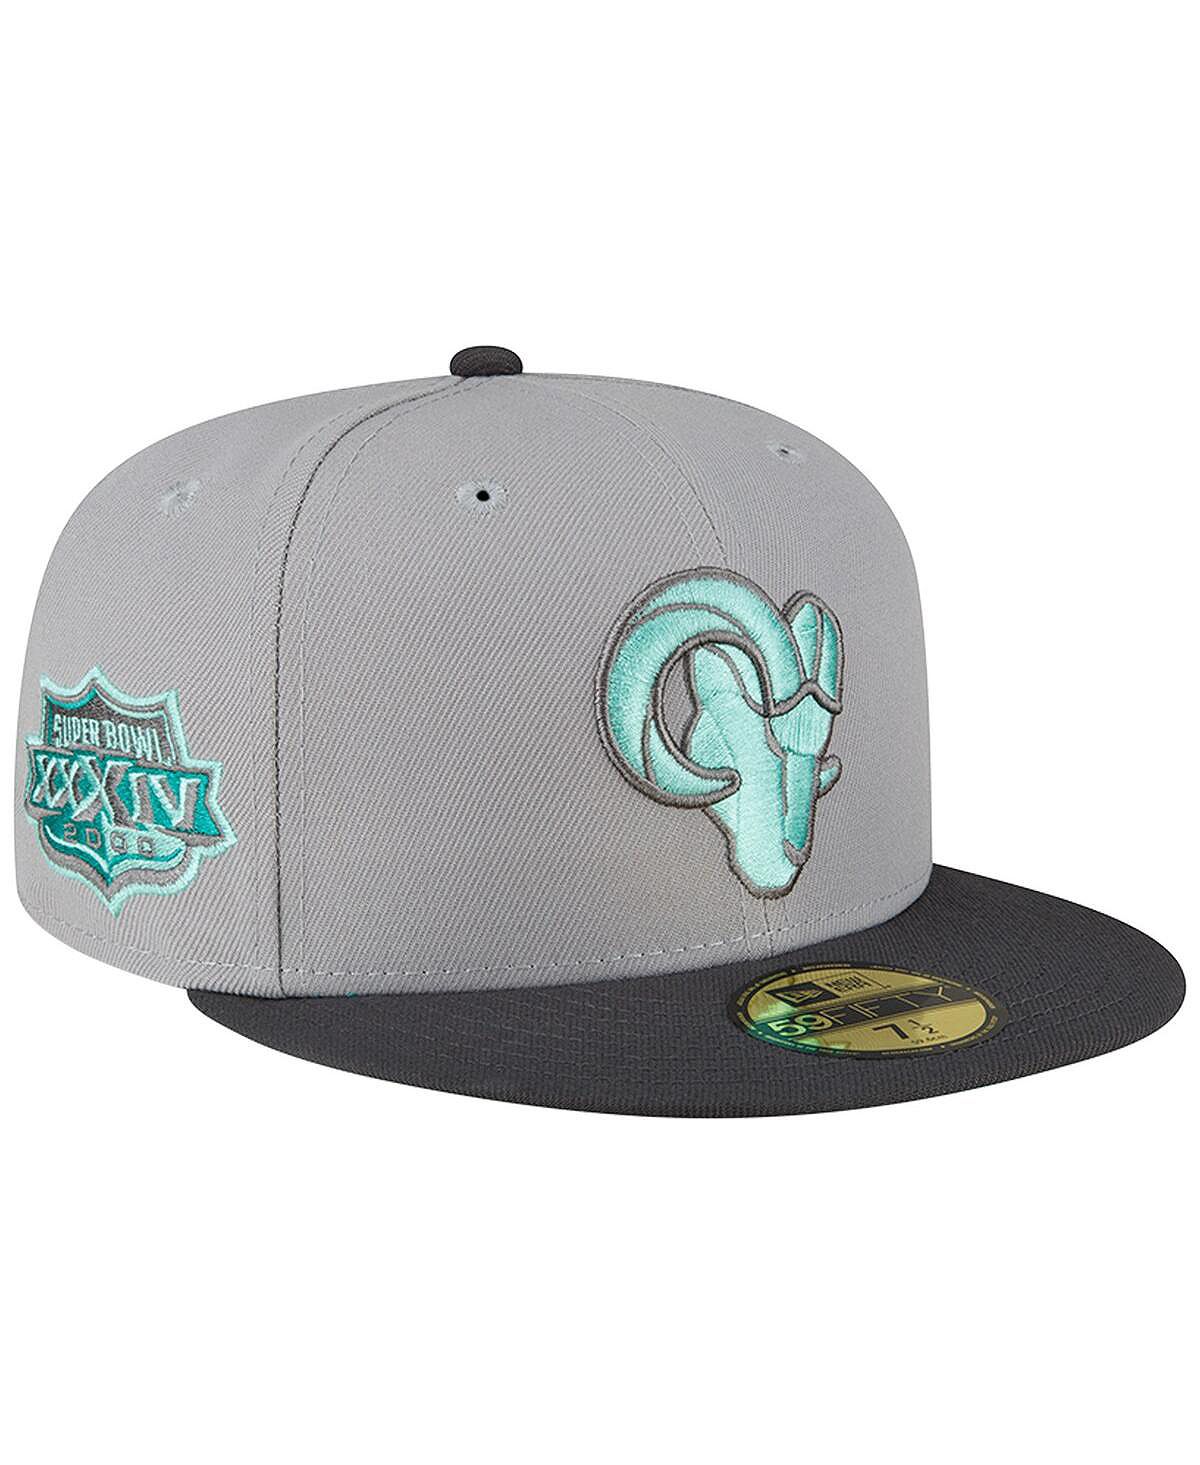 Мужская серая, графитовая приталенная шляпа Los Angeles Rams Aqua Pop 59FIFTY New Era